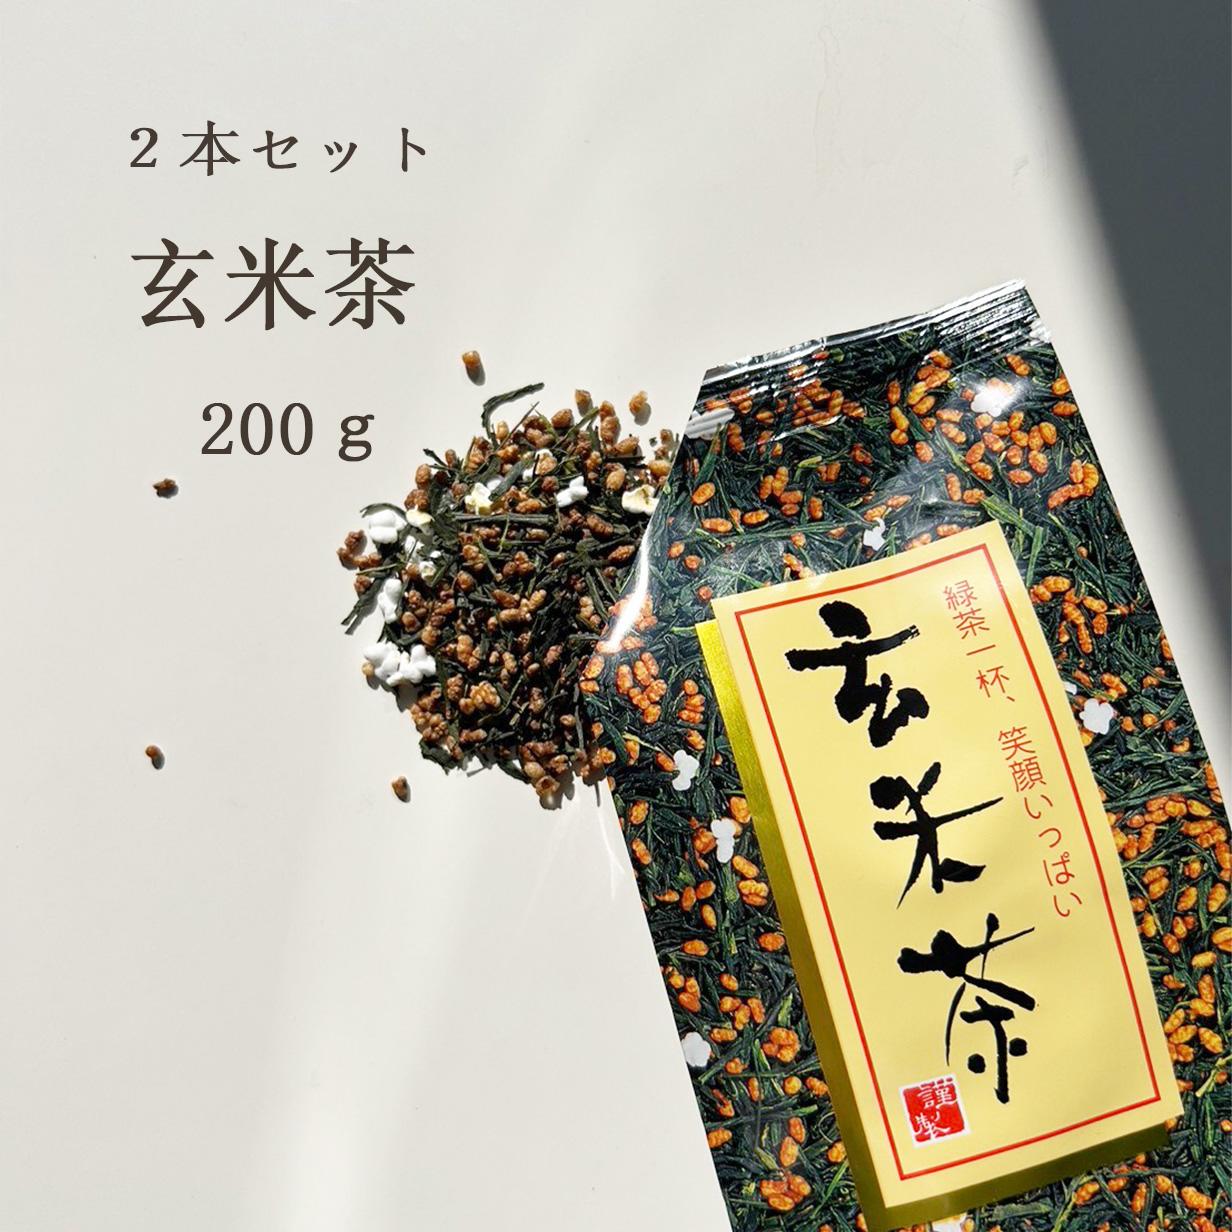 お茶 玄米茶【2本セット】200g お茶 